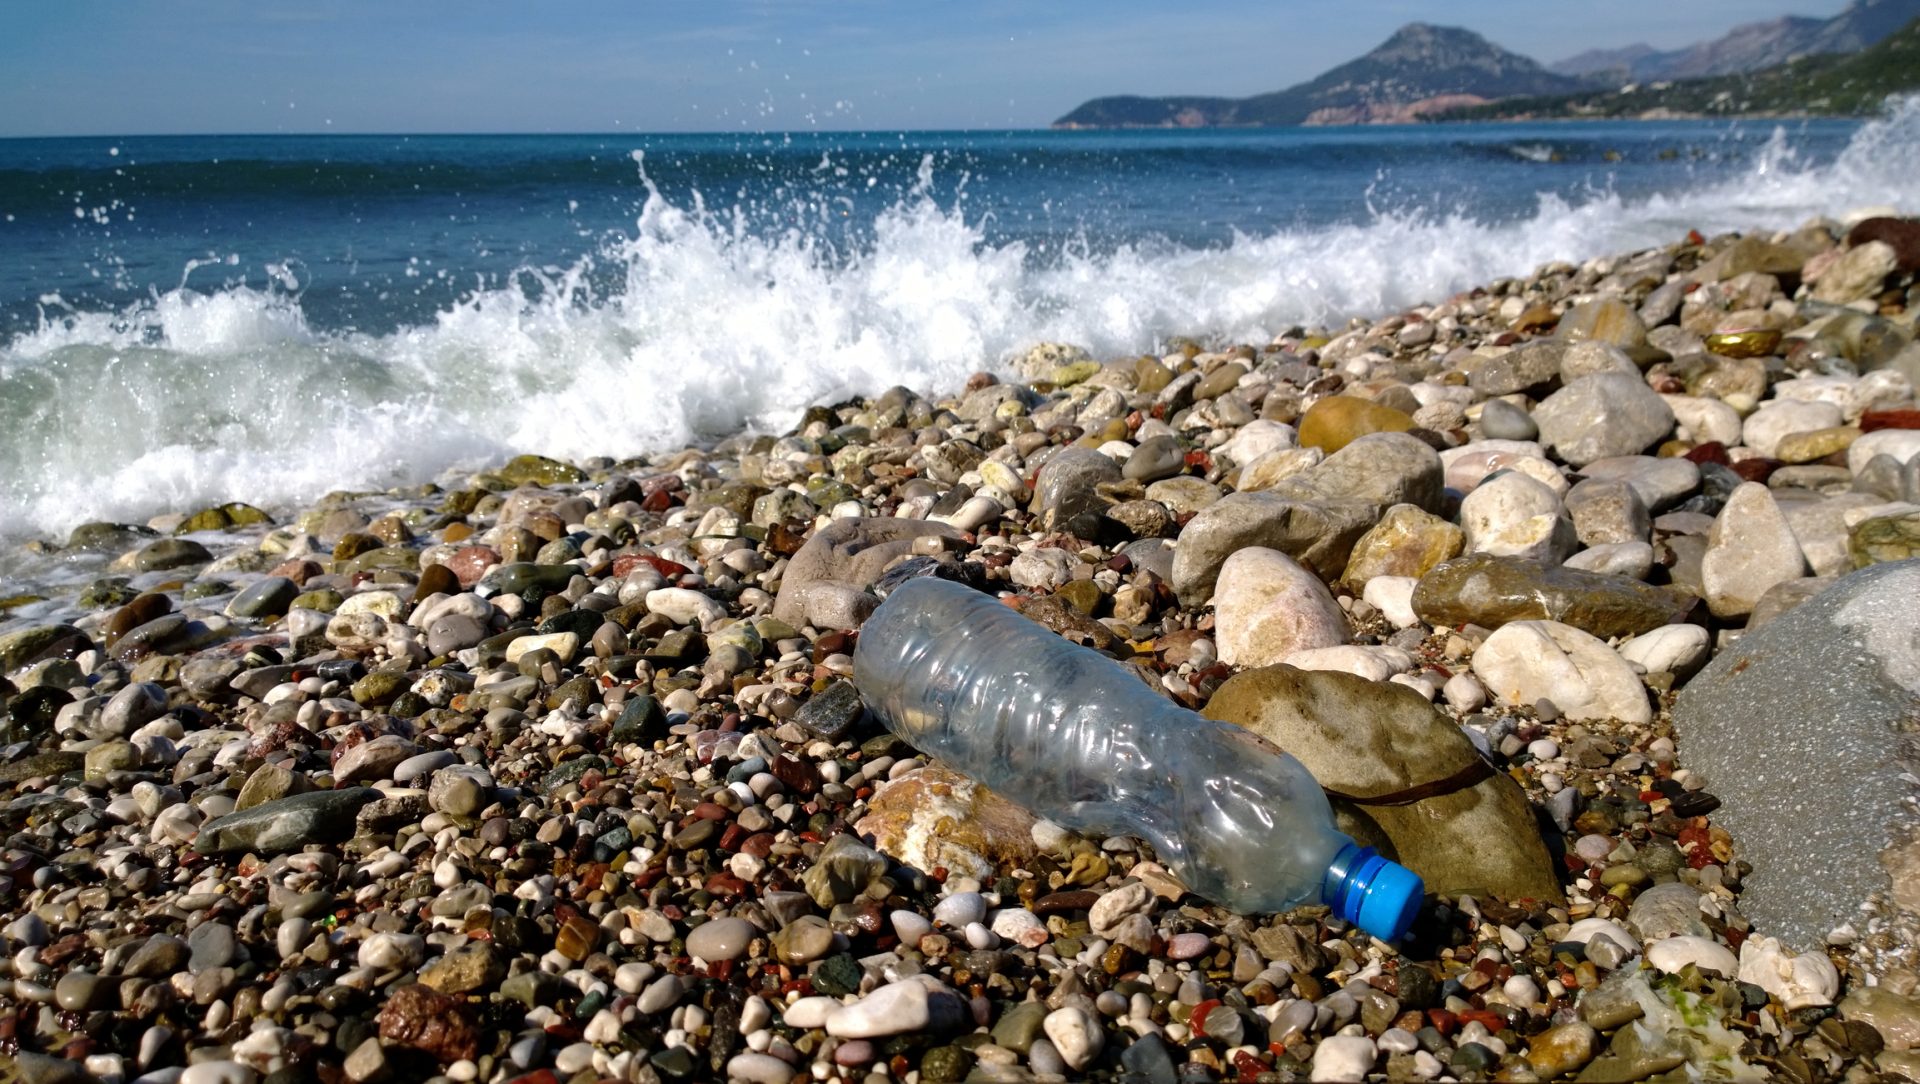 “O mais tardar em 2021, Portugal estará livre de palhinhas e garrafas de plástico”